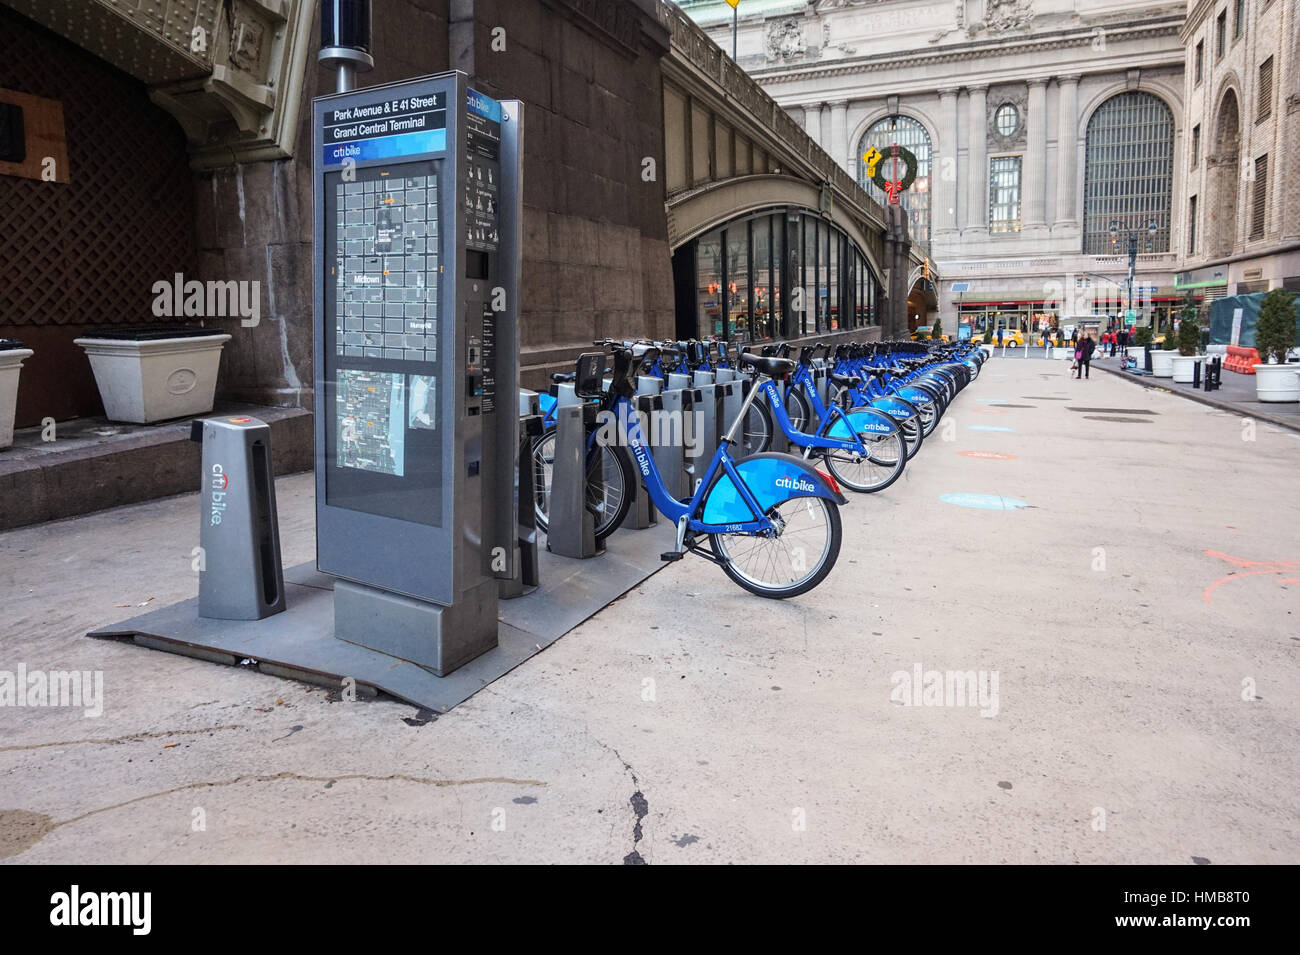 Système de partage de vélo Citi à New York - à l'extérieur de la gare Grand Central Terminal Banque D'Images